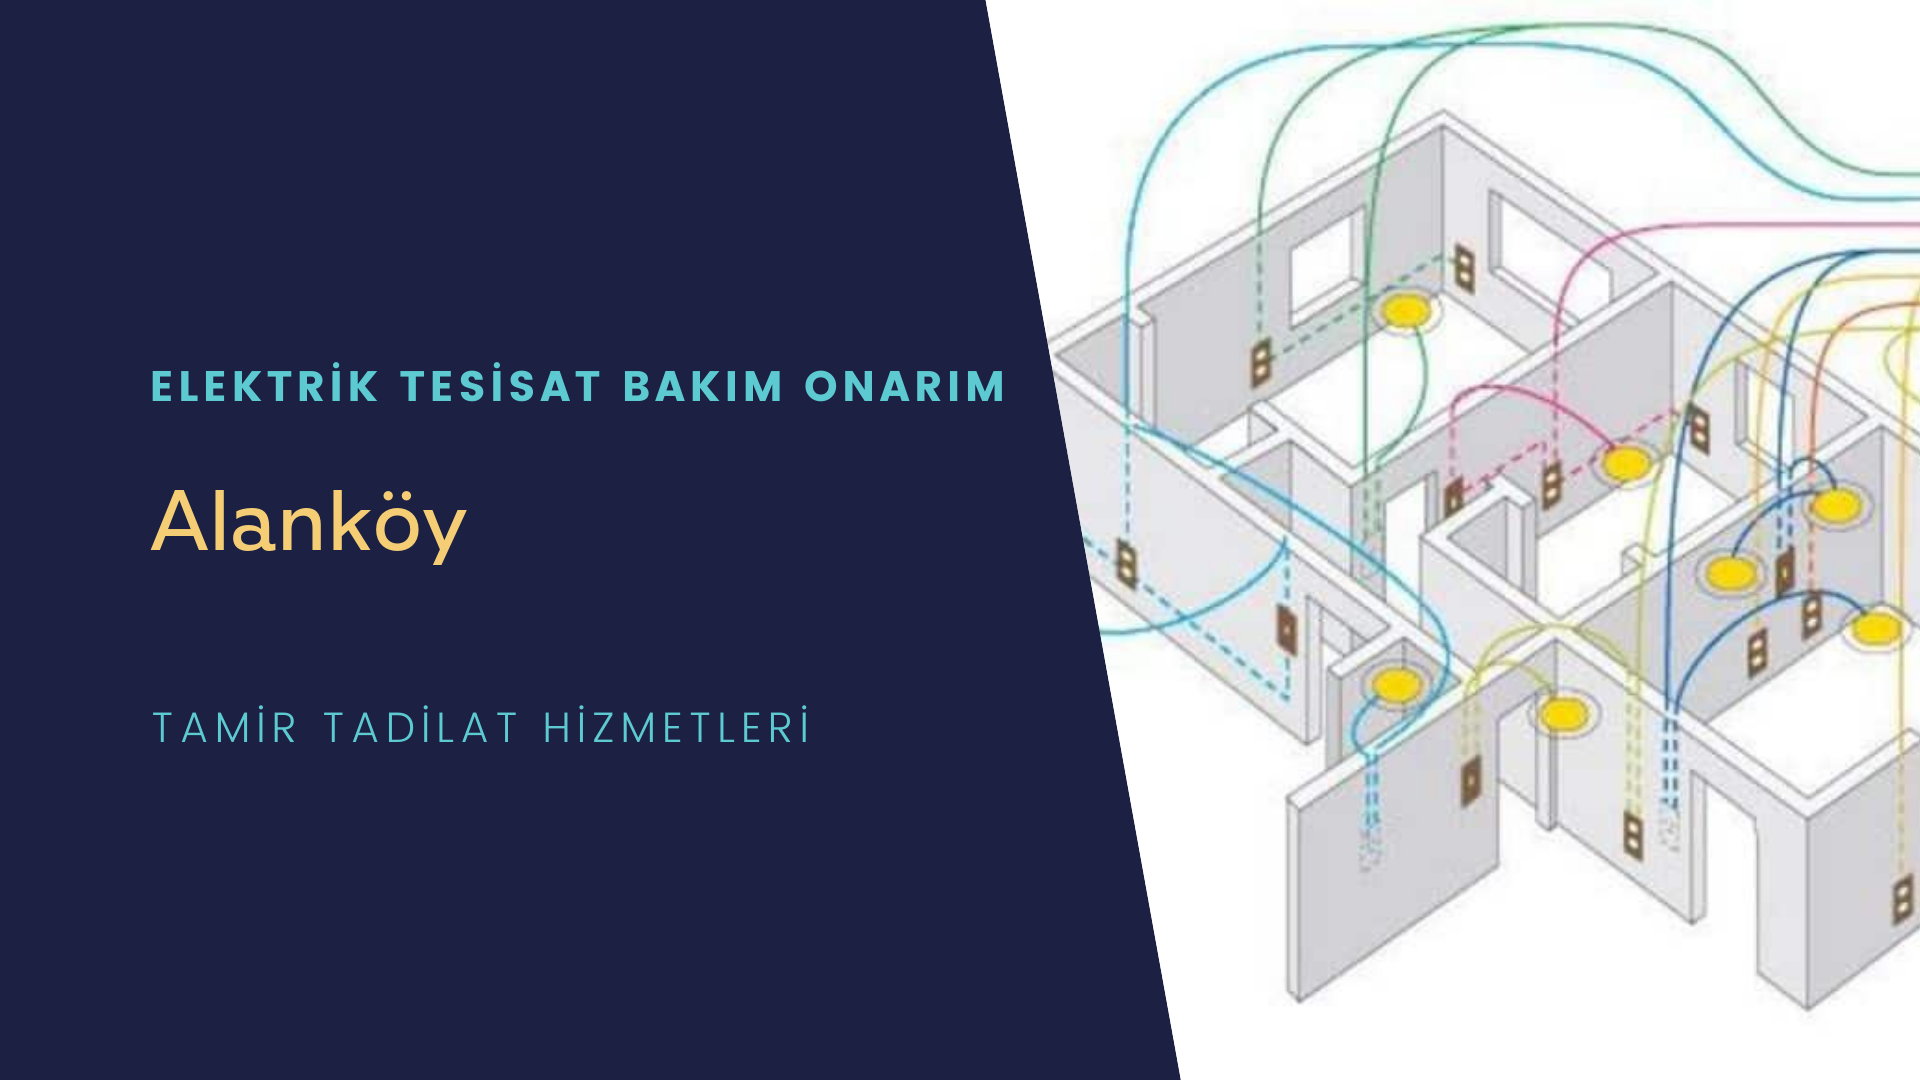 Alanköy'de elektrik tesisatı ustalarımı arıyorsunuz doğru adrestenizi Alanköy elektrik tesisatı ustalarımız 7/24 sizlere hizmet vermekten mutluluk duyar.